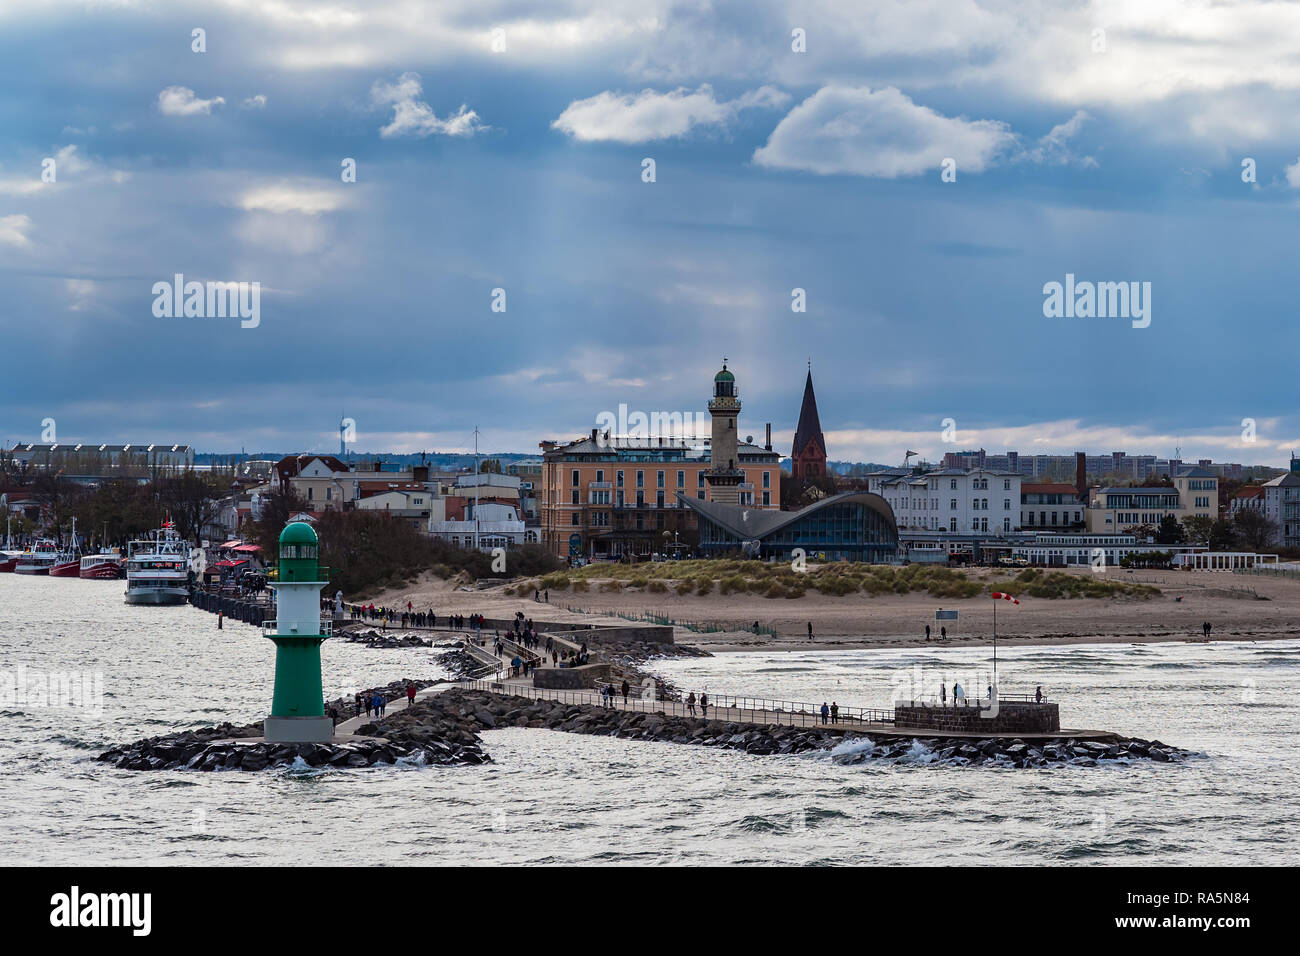 Mole sur la côte de la mer Baltique à Warnemuende, Allemagne. Banque D'Images